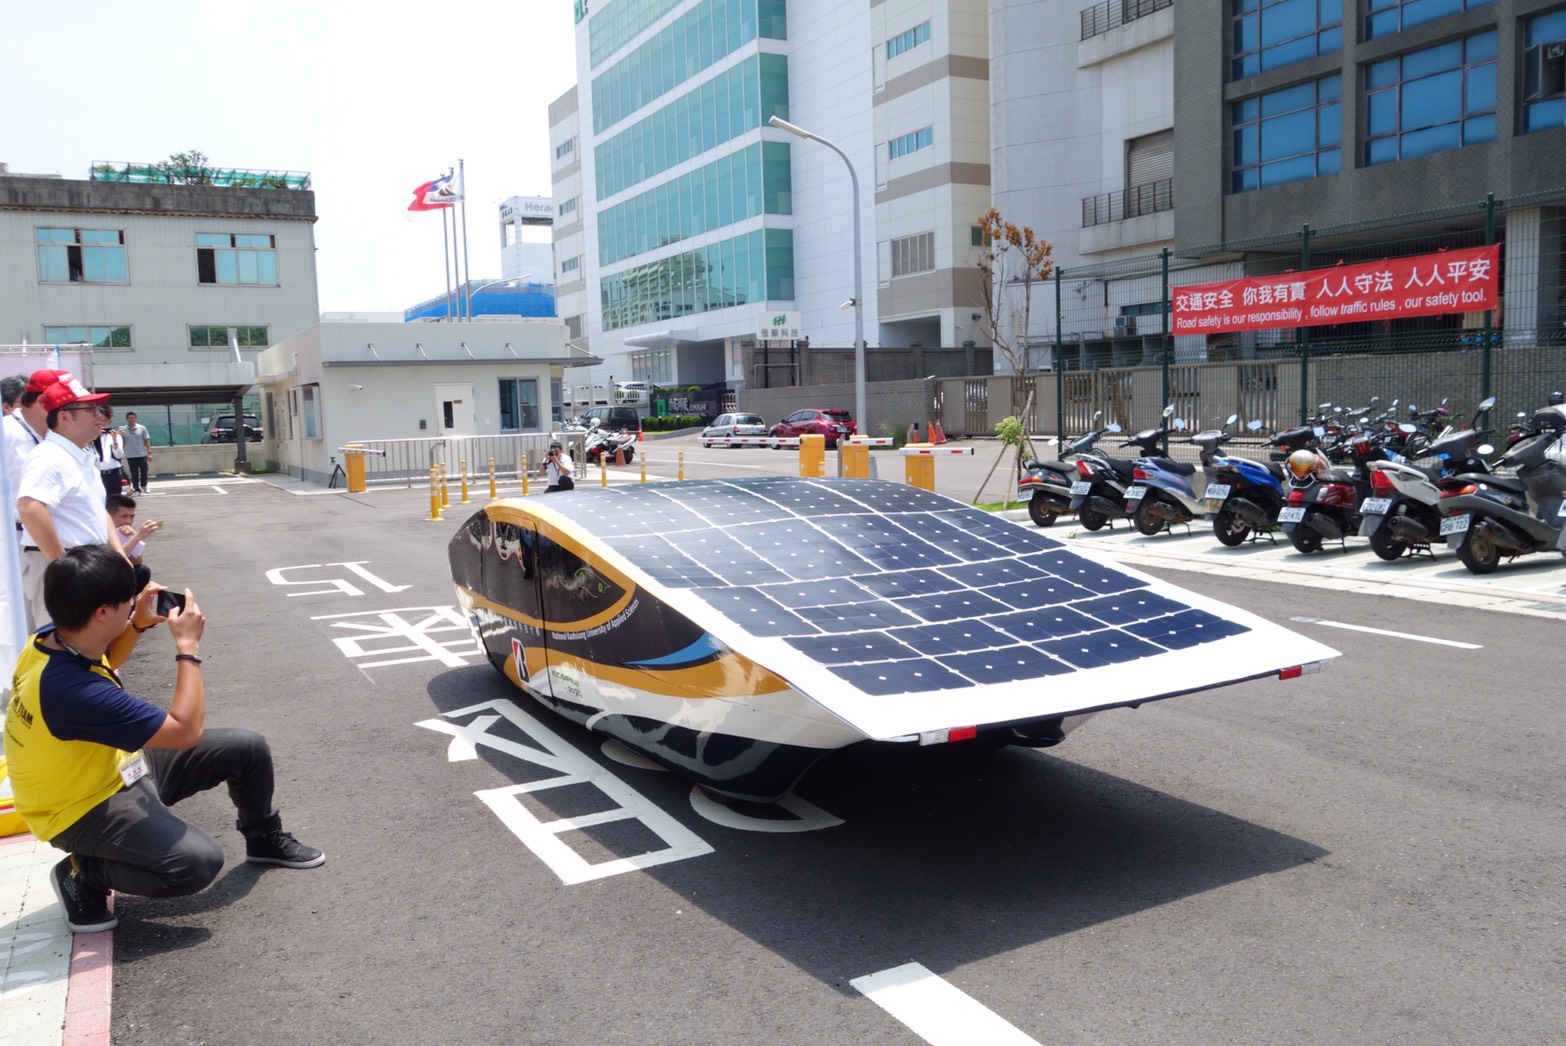 阿波羅太陽能車隊自行研發的太陽電池模組，在行駛狀態下可以自行冷卻，提升光電轉換效能